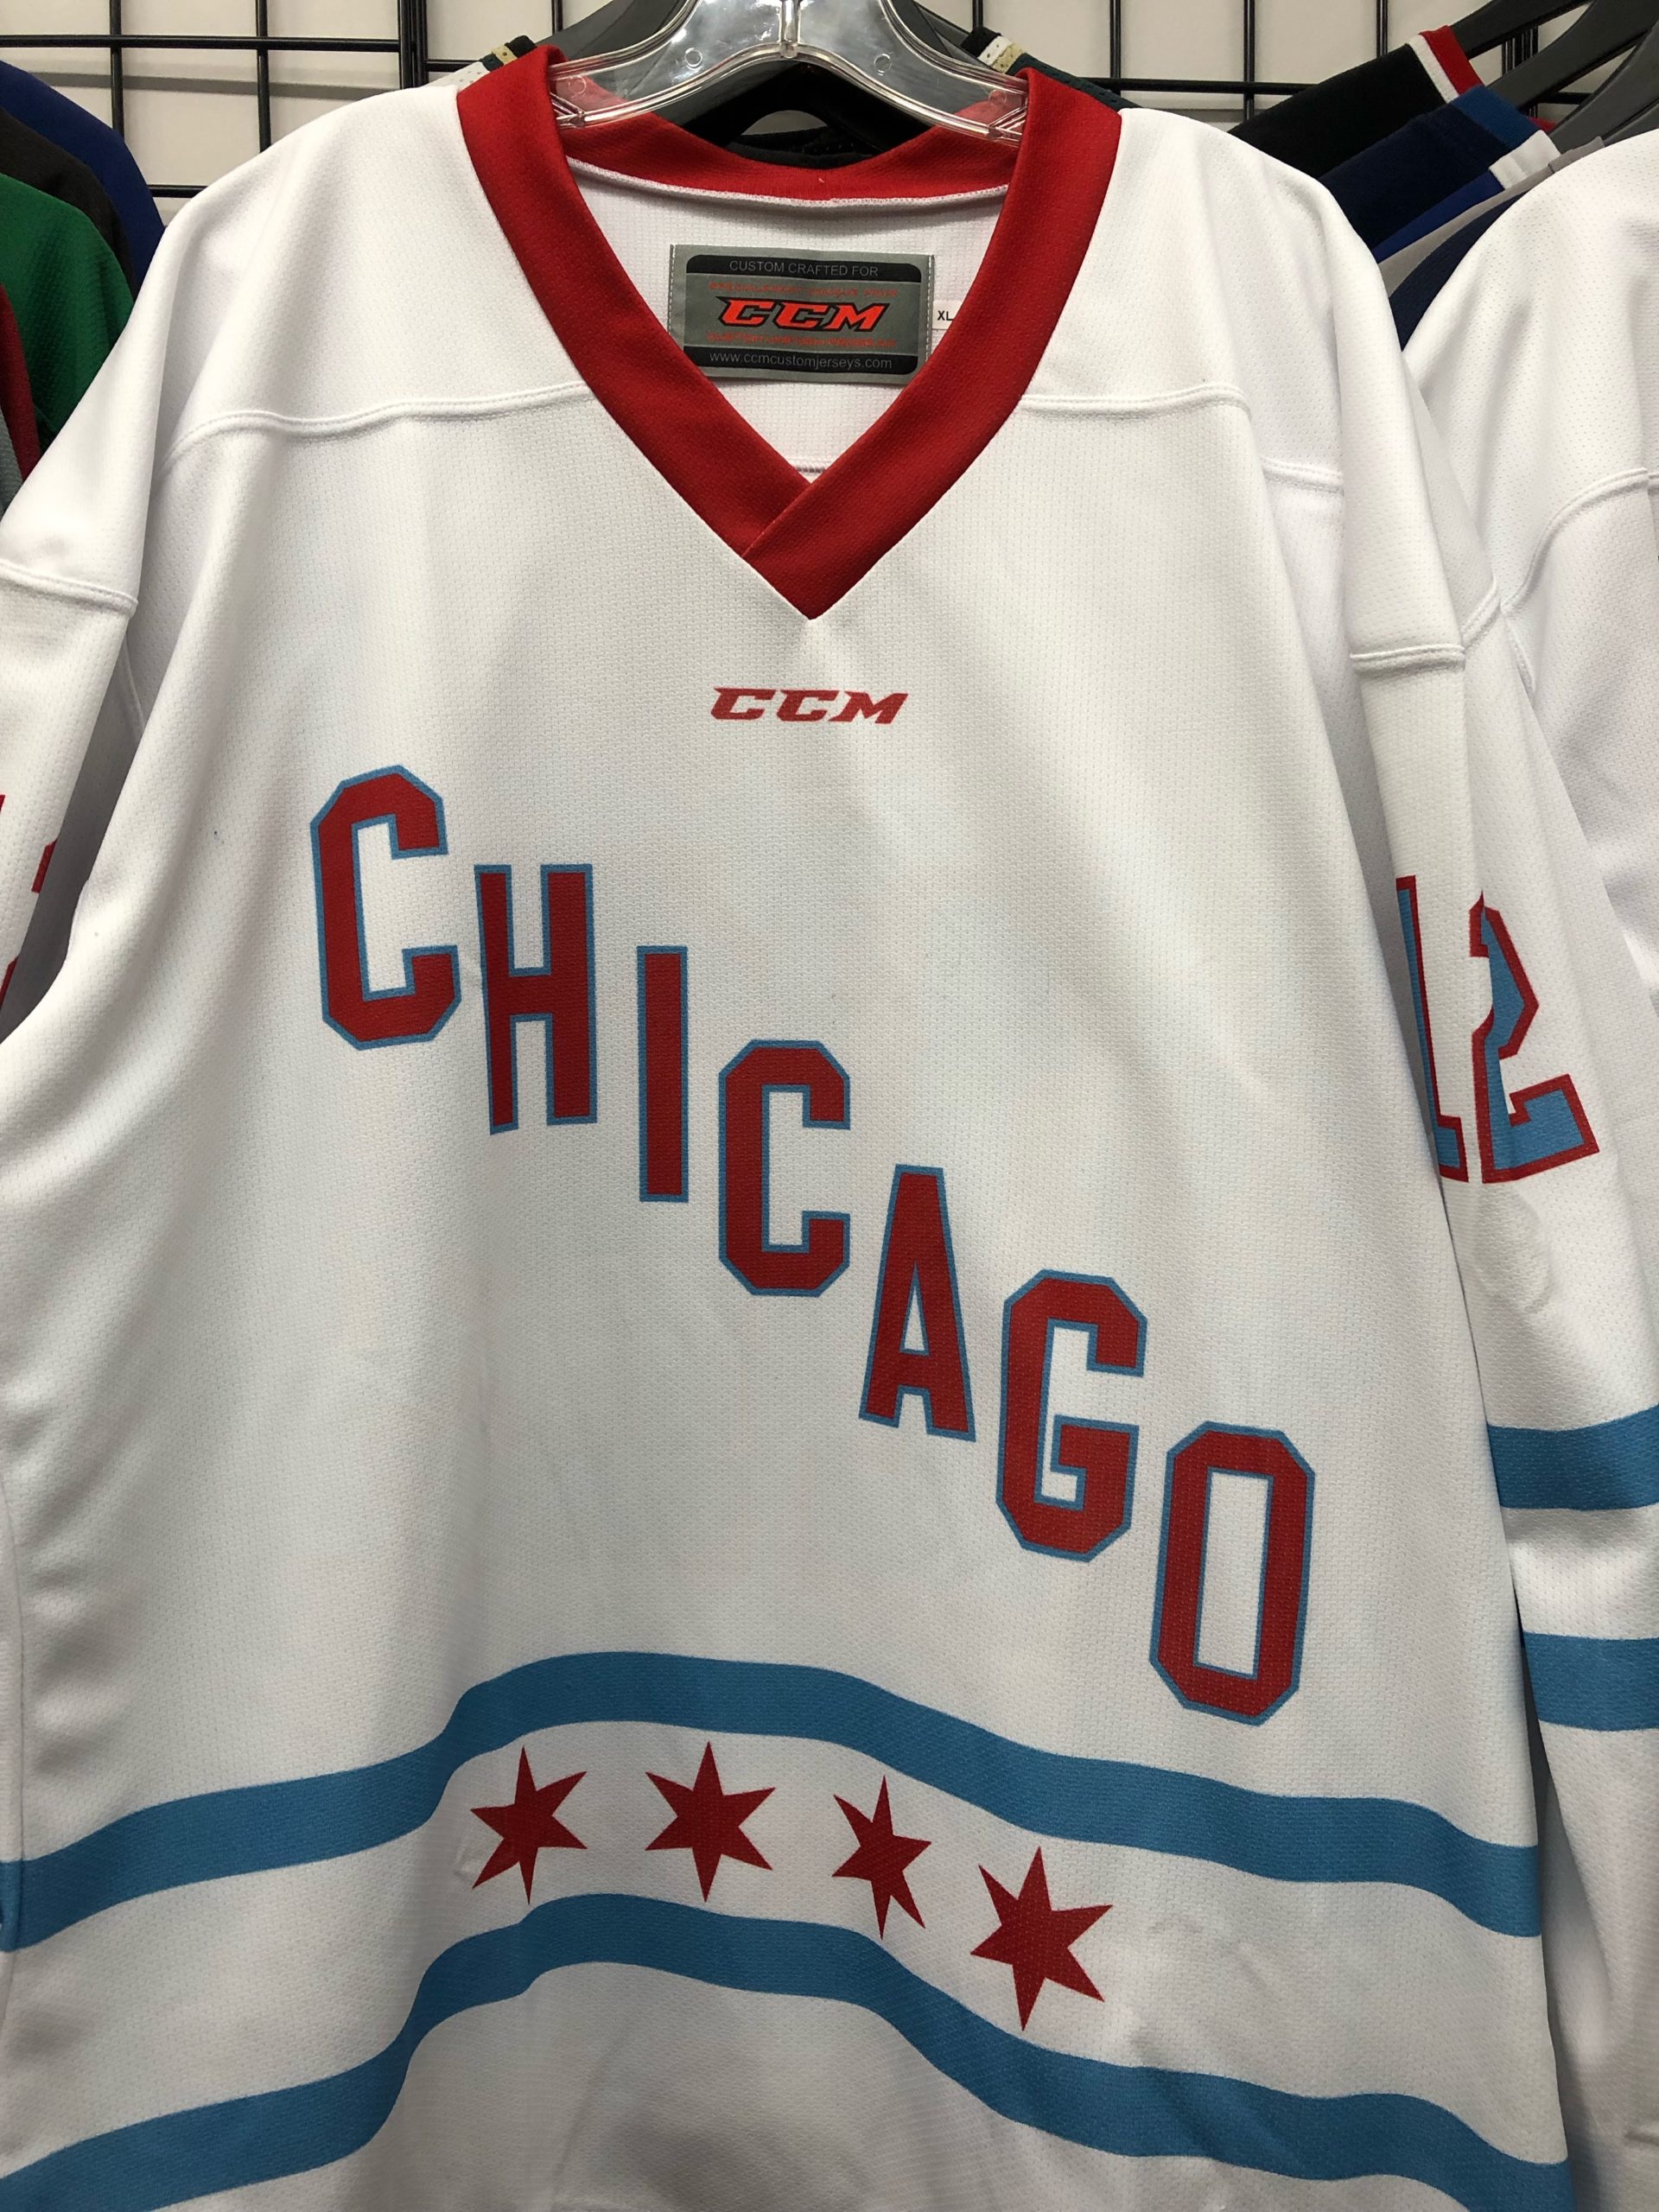 Custom Hockey Jerseys In Chicago: Jerseys For Any Level